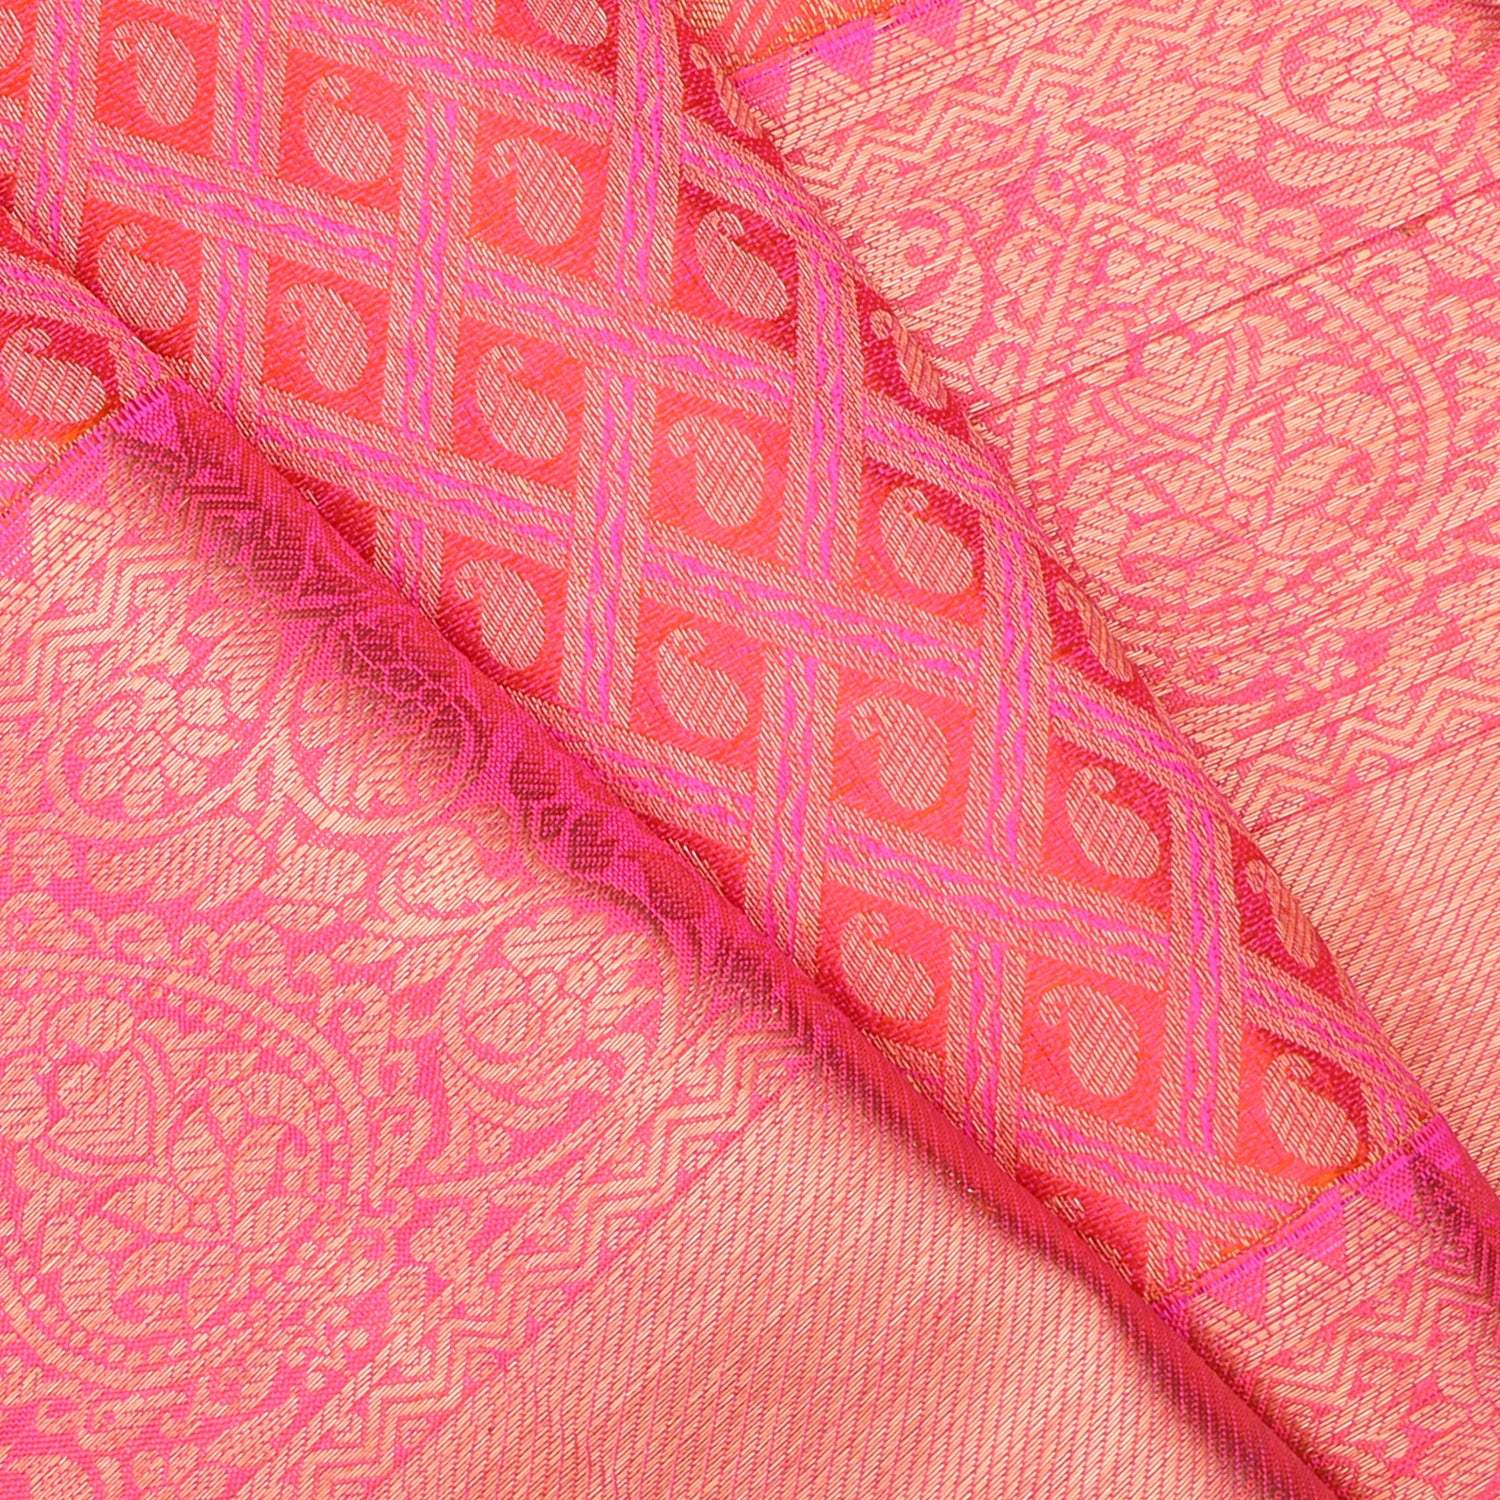 Vibrant Red Kanjivaram Silk Saree With Paisley Motif In Checks - Singhania's